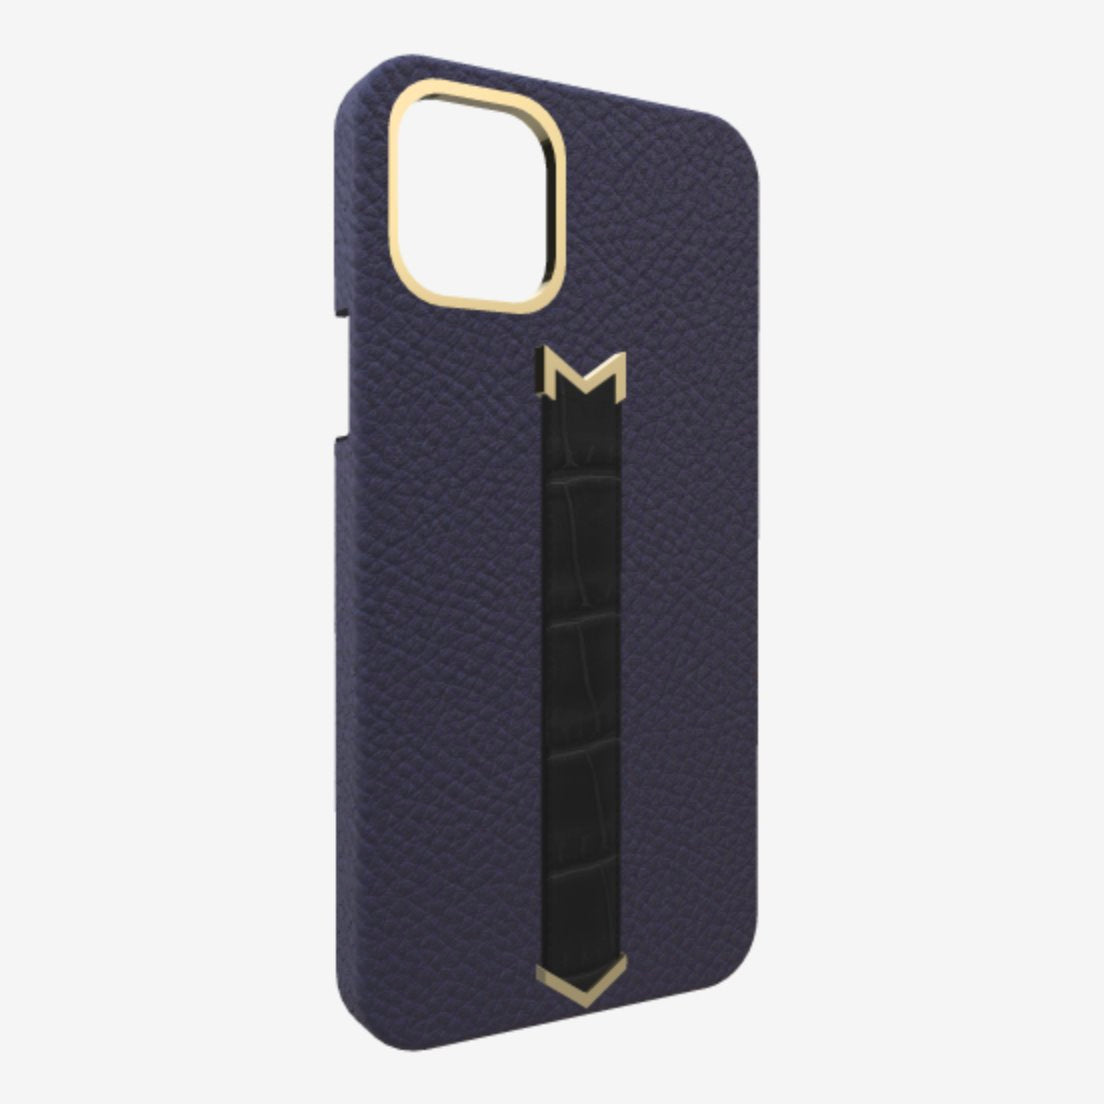 Gold Finger Strap Case for iPhone 13 Pro in Genuine Calfskin and Alligator Navy Blue Bond Black 